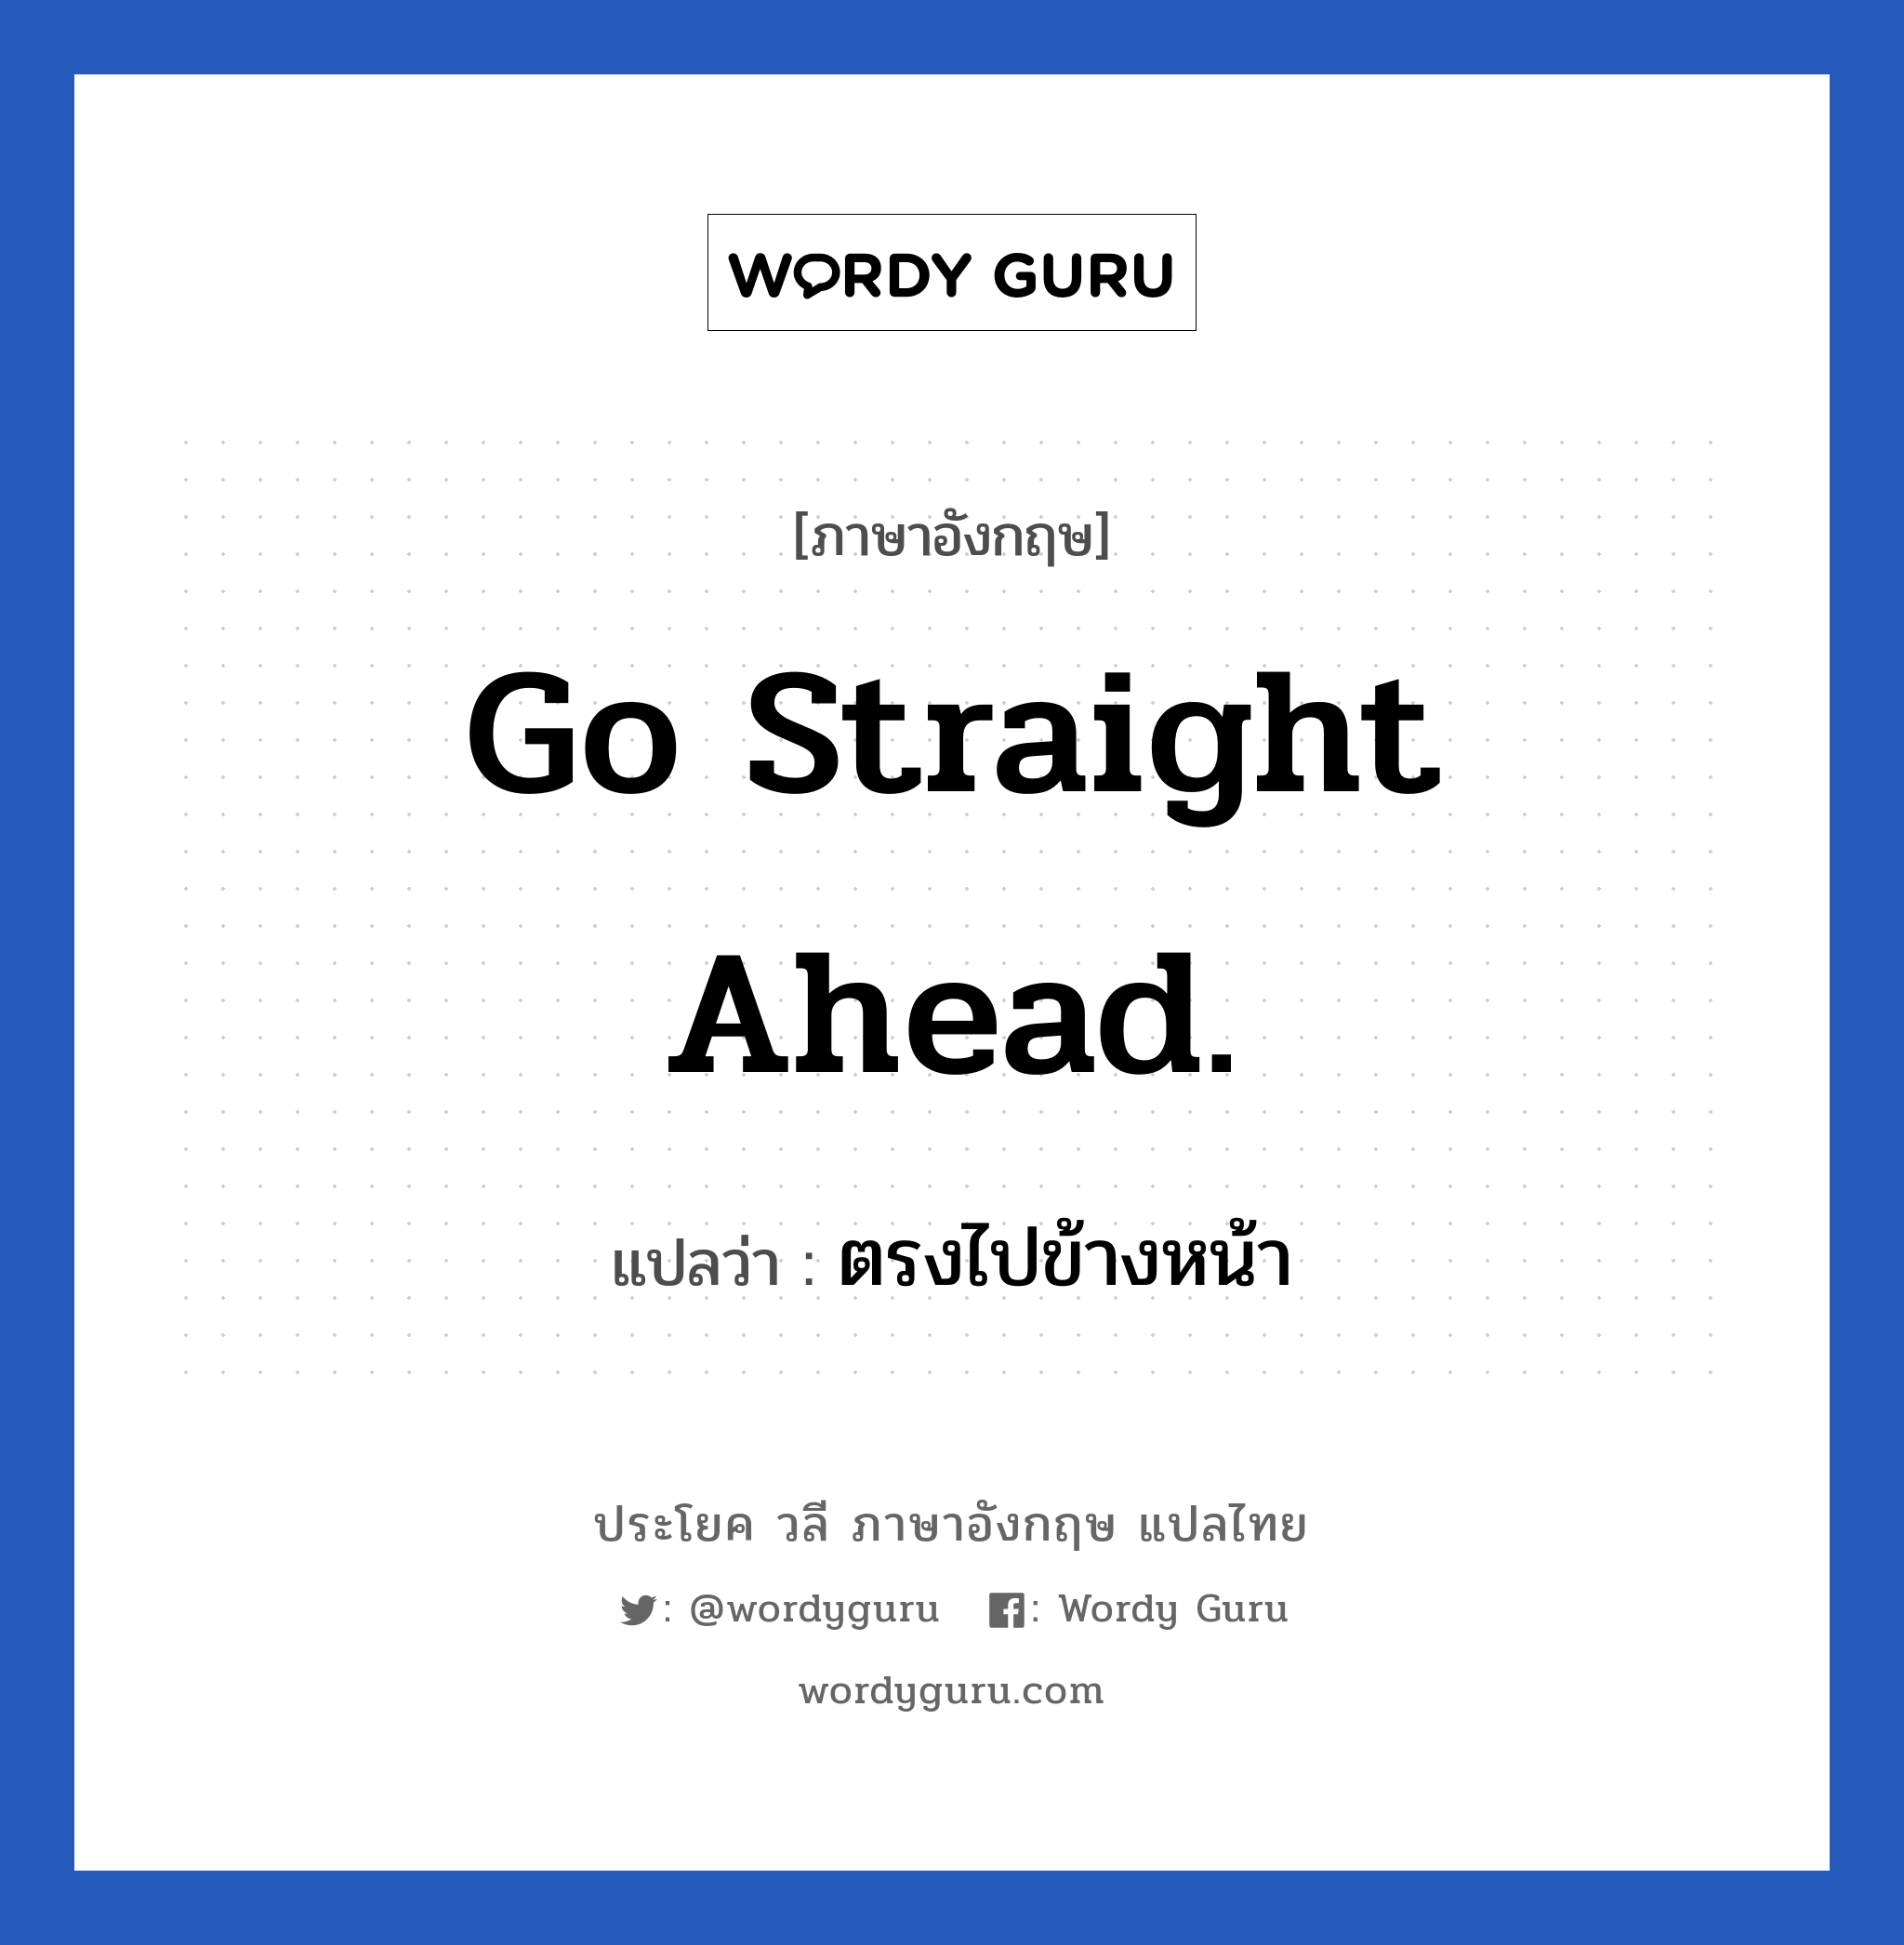 ตรงไปข้างหน้า ภาษาอังกฤษ?, วลีภาษาอังกฤษ ตรงไปข้างหน้า แปลว่า Go straight ahead.